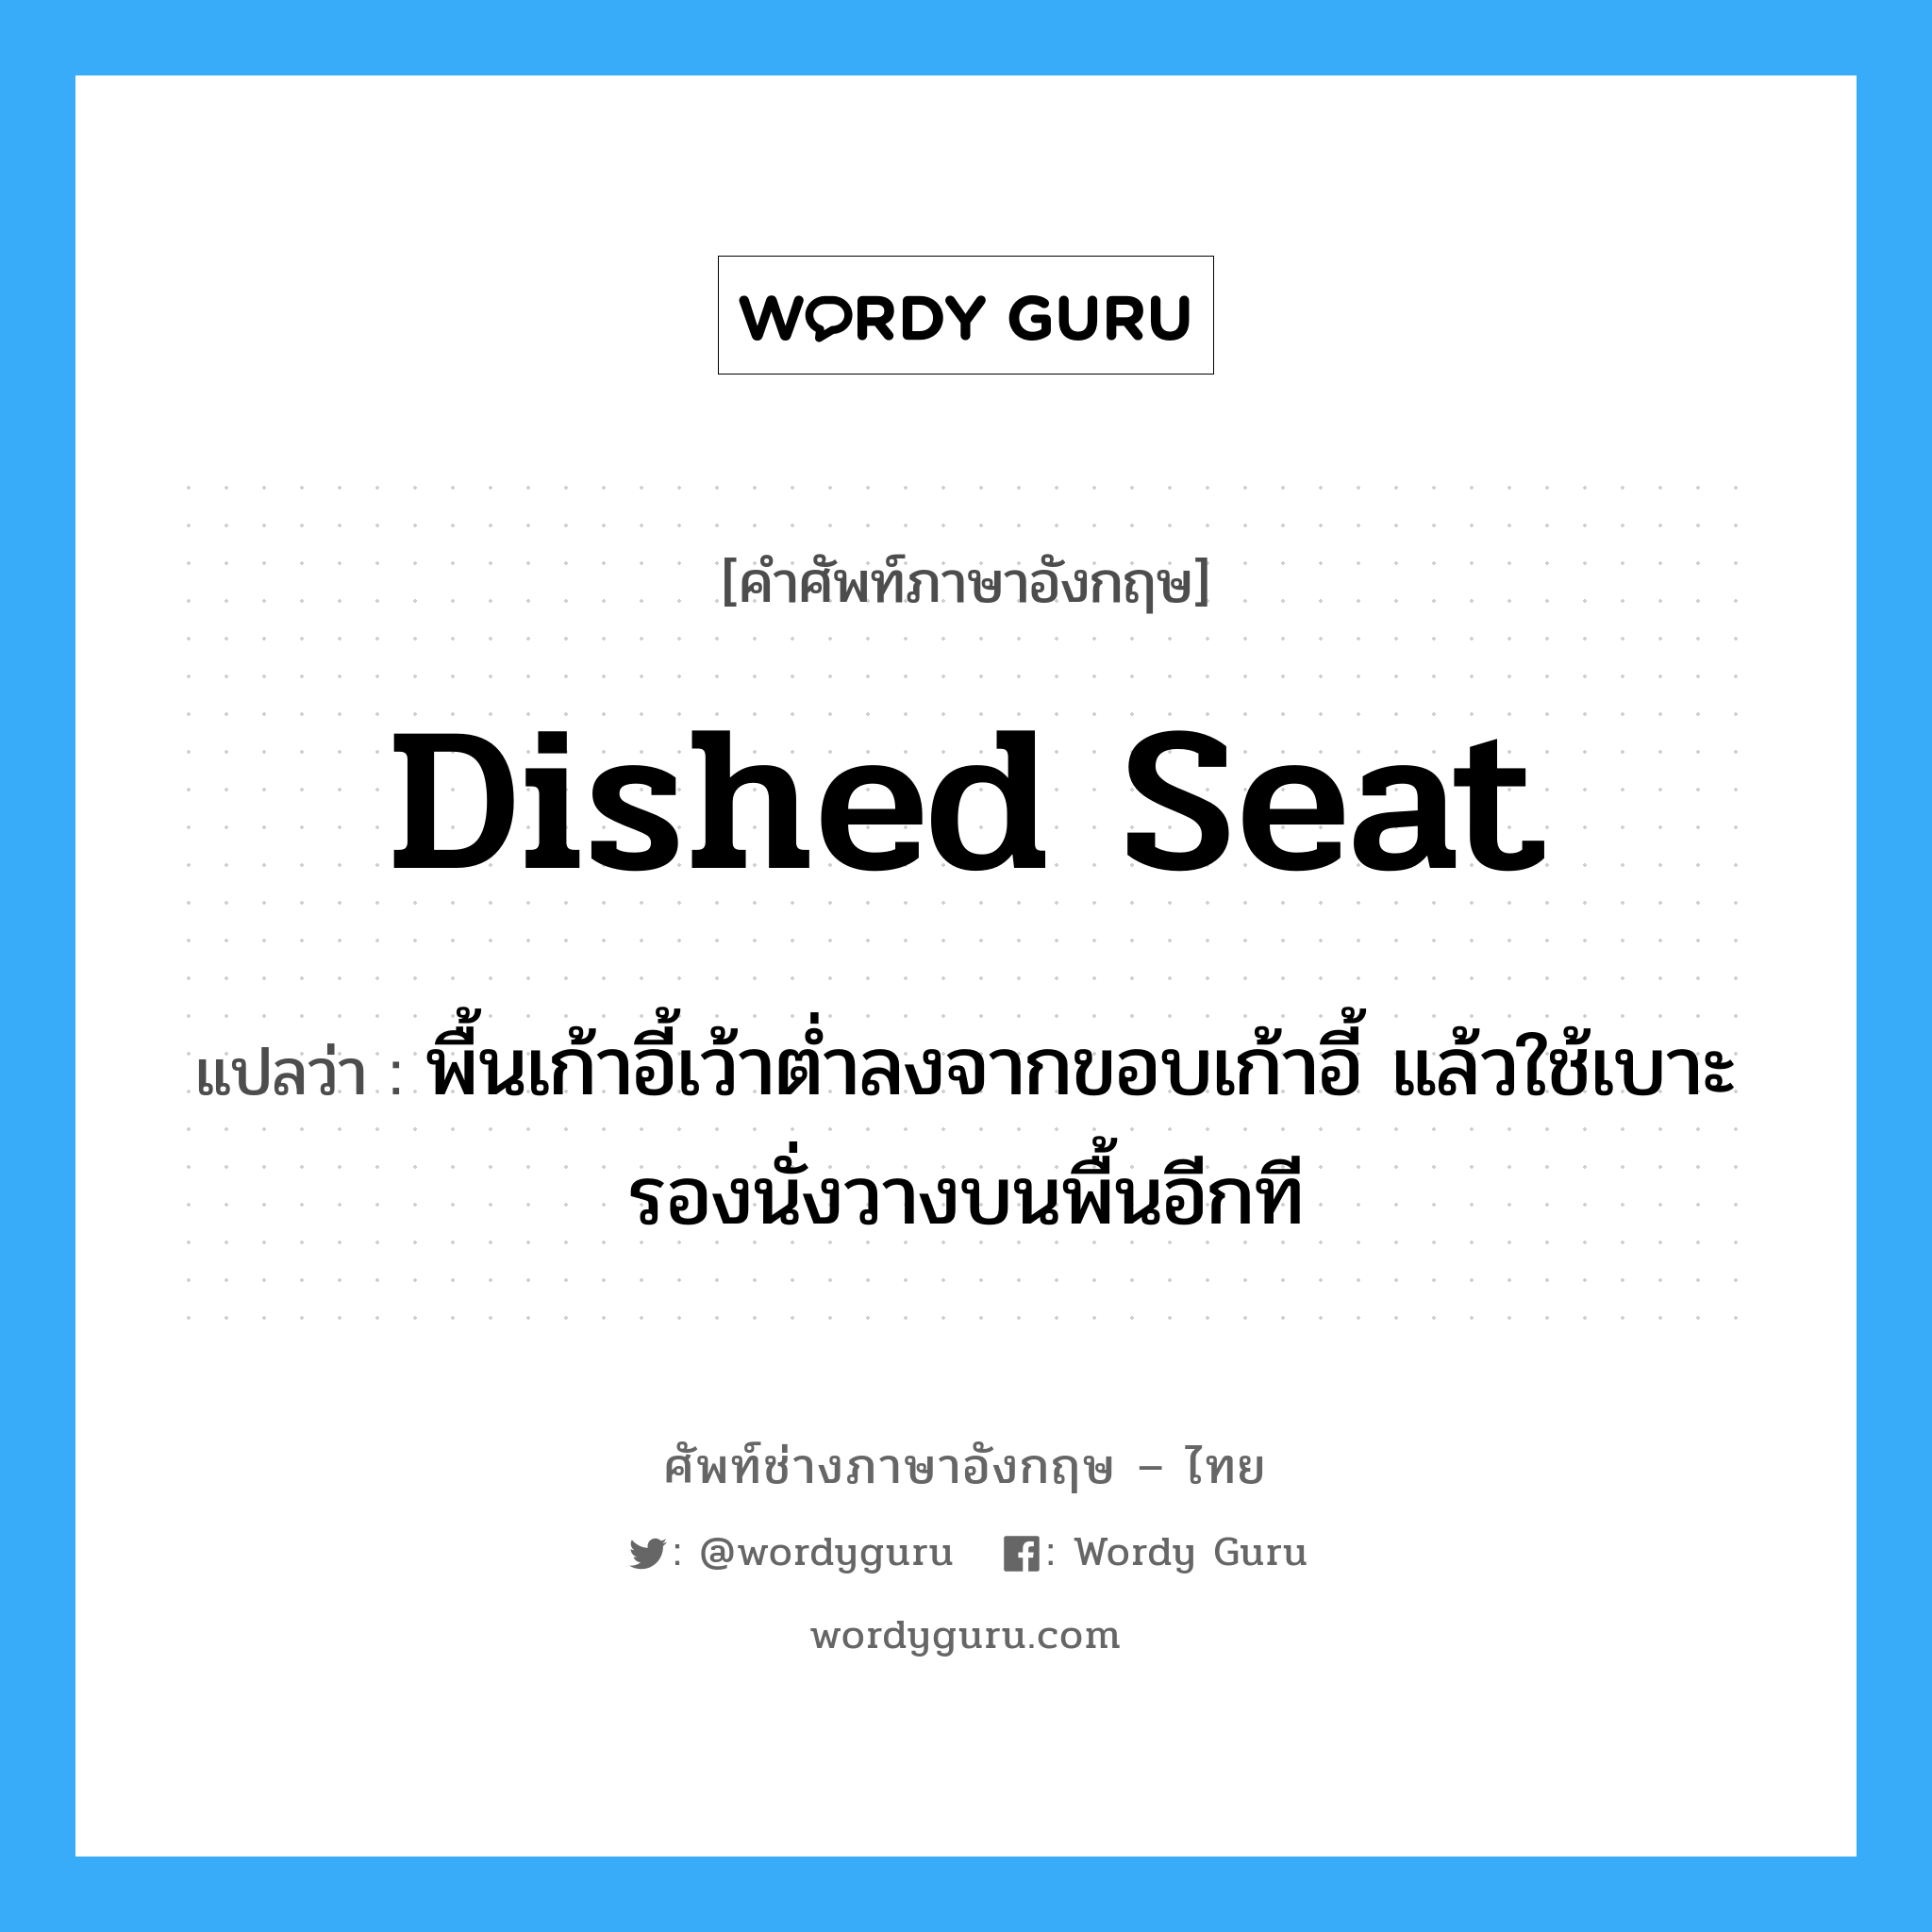 dished seat แปลว่า?, คำศัพท์ช่างภาษาอังกฤษ - ไทย dished seat คำศัพท์ภาษาอังกฤษ dished seat แปลว่า พื้นเก้าอี้เว้าต่ำลงจากขอบเก้าอี้ แล้วใช้เบาะรองนั่งวางบนพื้นอีกที